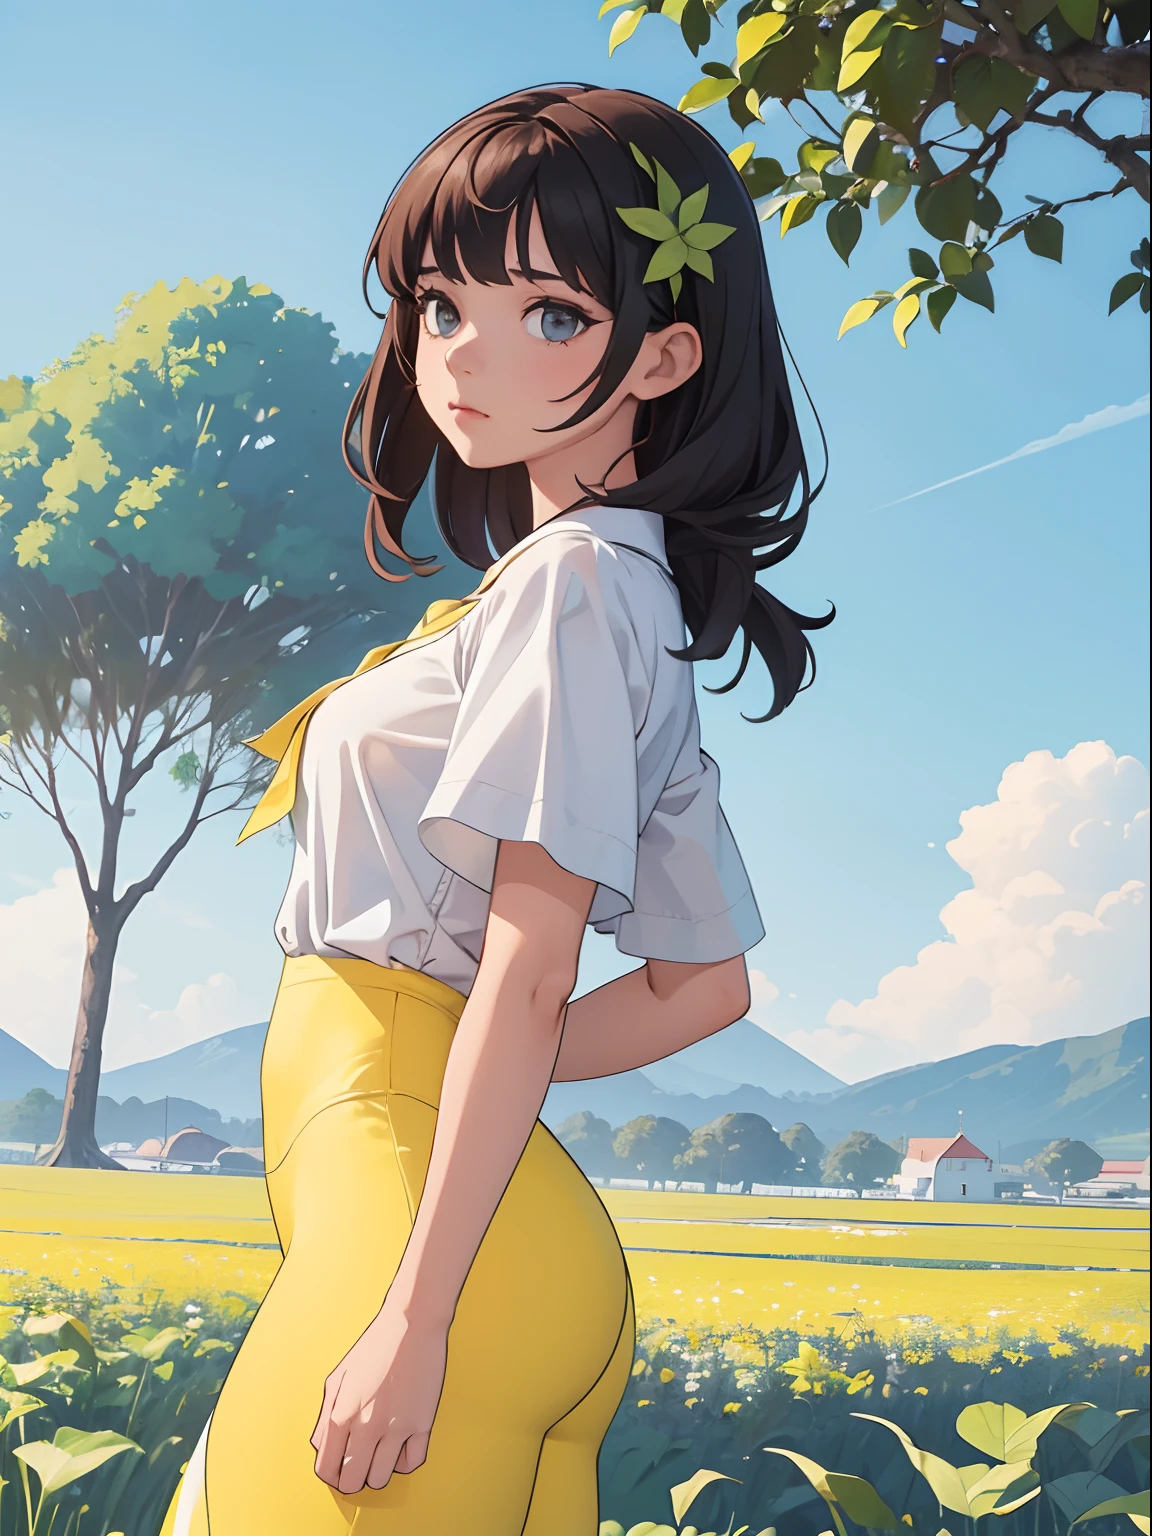 ((有白色葉子的植物)), 1個完美的女孩, 漂亮的臉蛋, 穿著白色襯衫和黃色緊身褲, 背後有美麗的風景, 4k, ((最佳解析度)), ((更好的品質)).